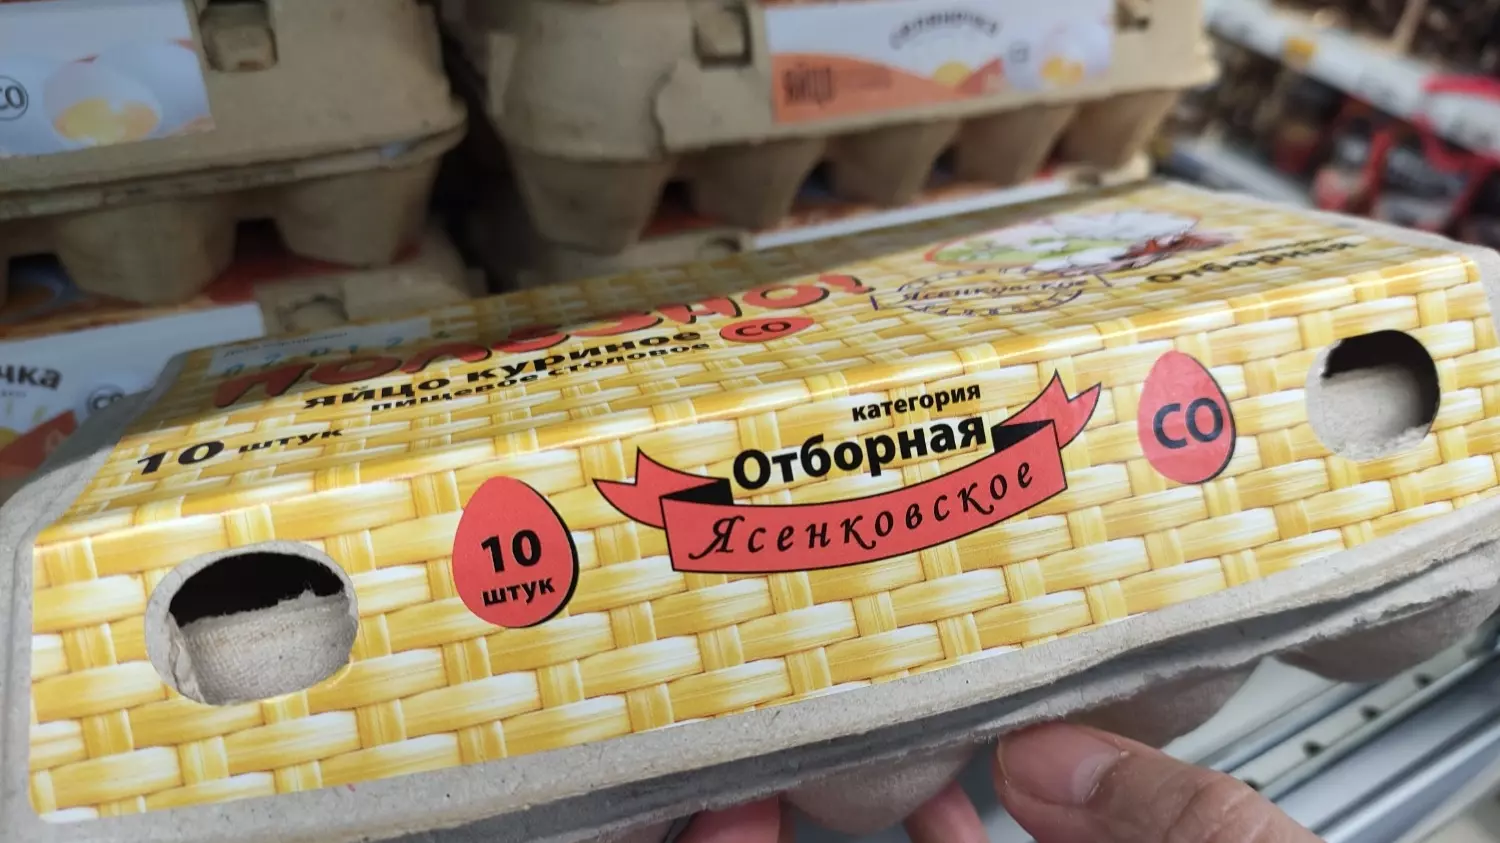 Самая дешевая цена на яйца в магазине "Пятерочка" -  89,99 рубля за десяток категории С1